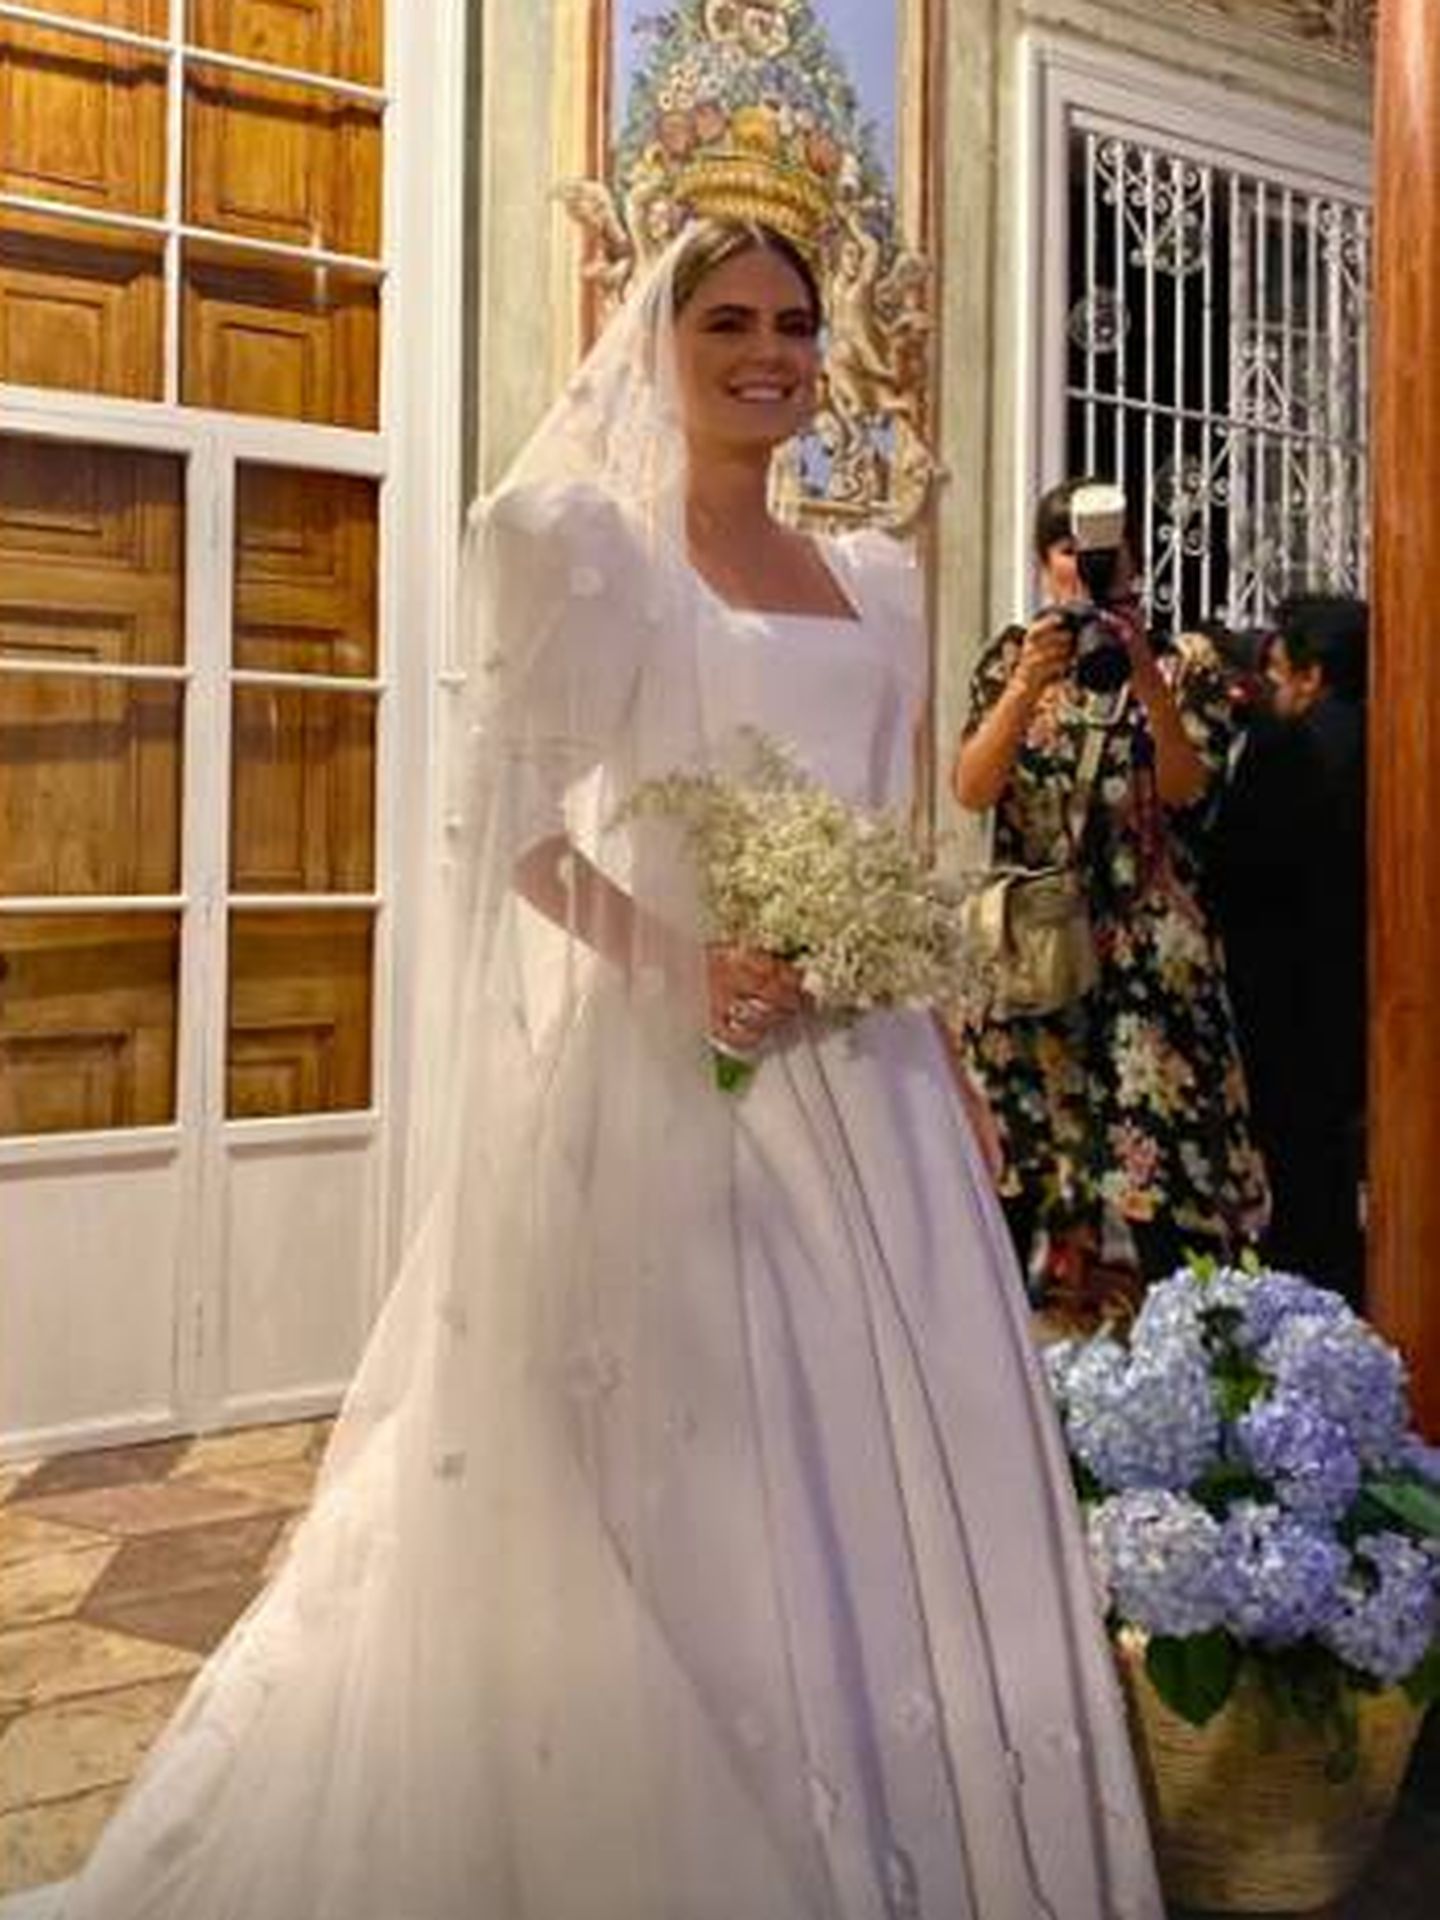 Belén Barnechea, posando con su vestido de novia. (IG)